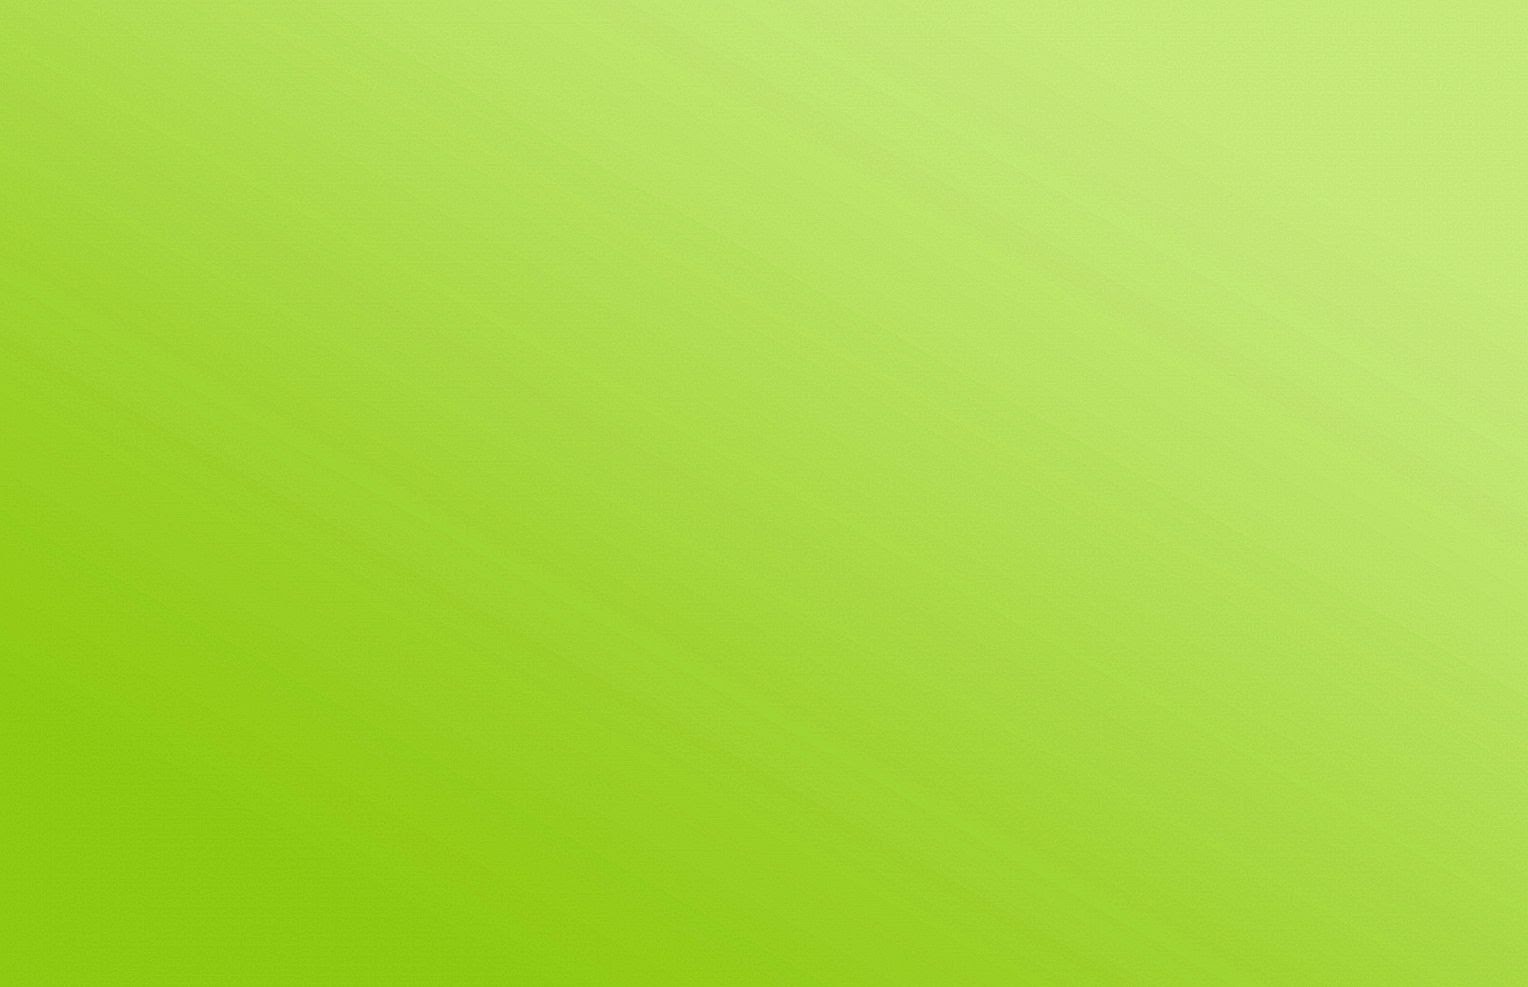 yeşil wallpaper,green,yellow,grass